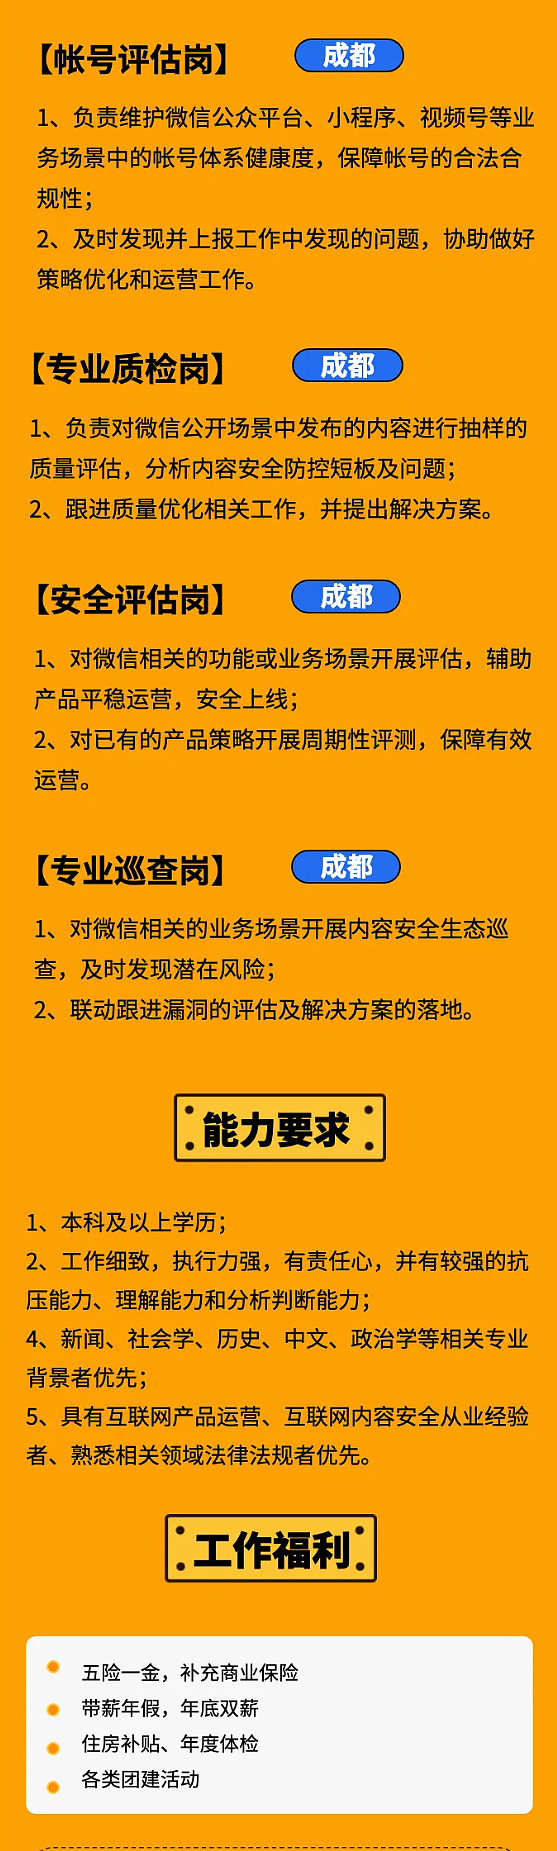 微信宣布招聘“鉴黄师” 要求本科学历起步 - 2